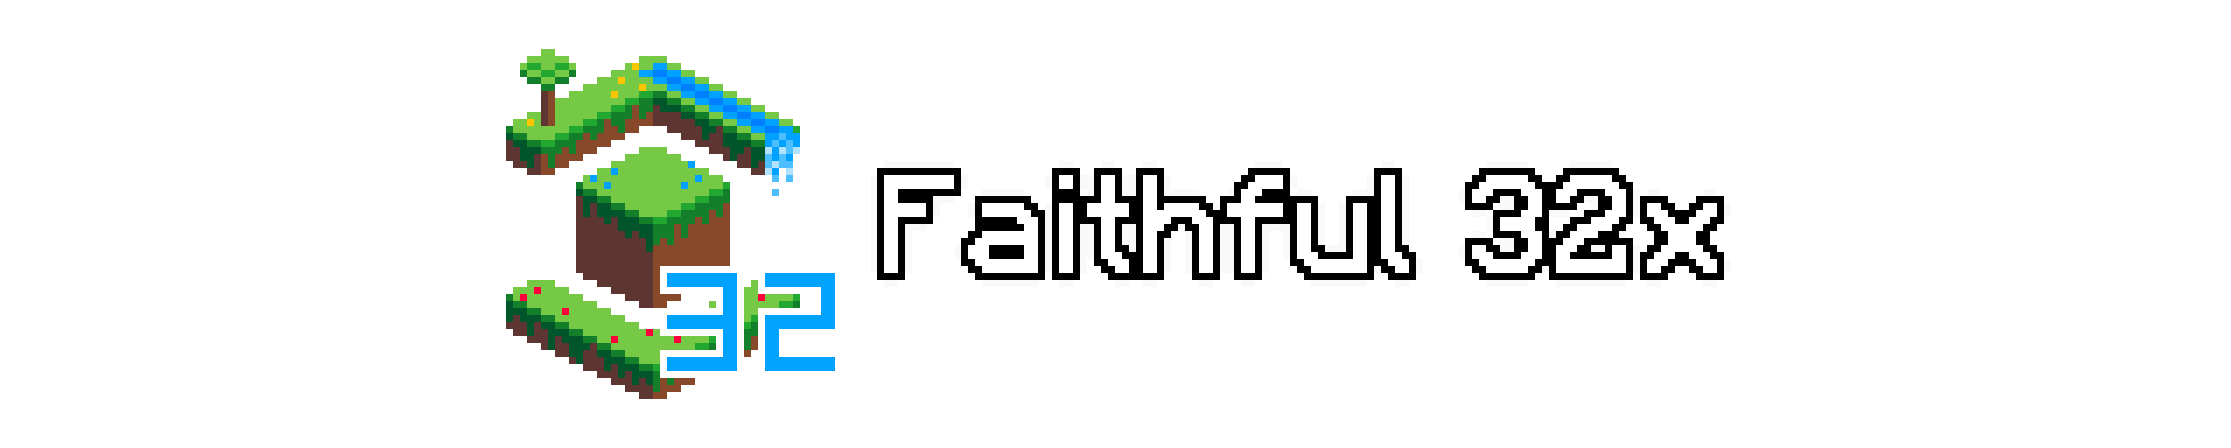 Faithful 32x Minecraft Texture Pack